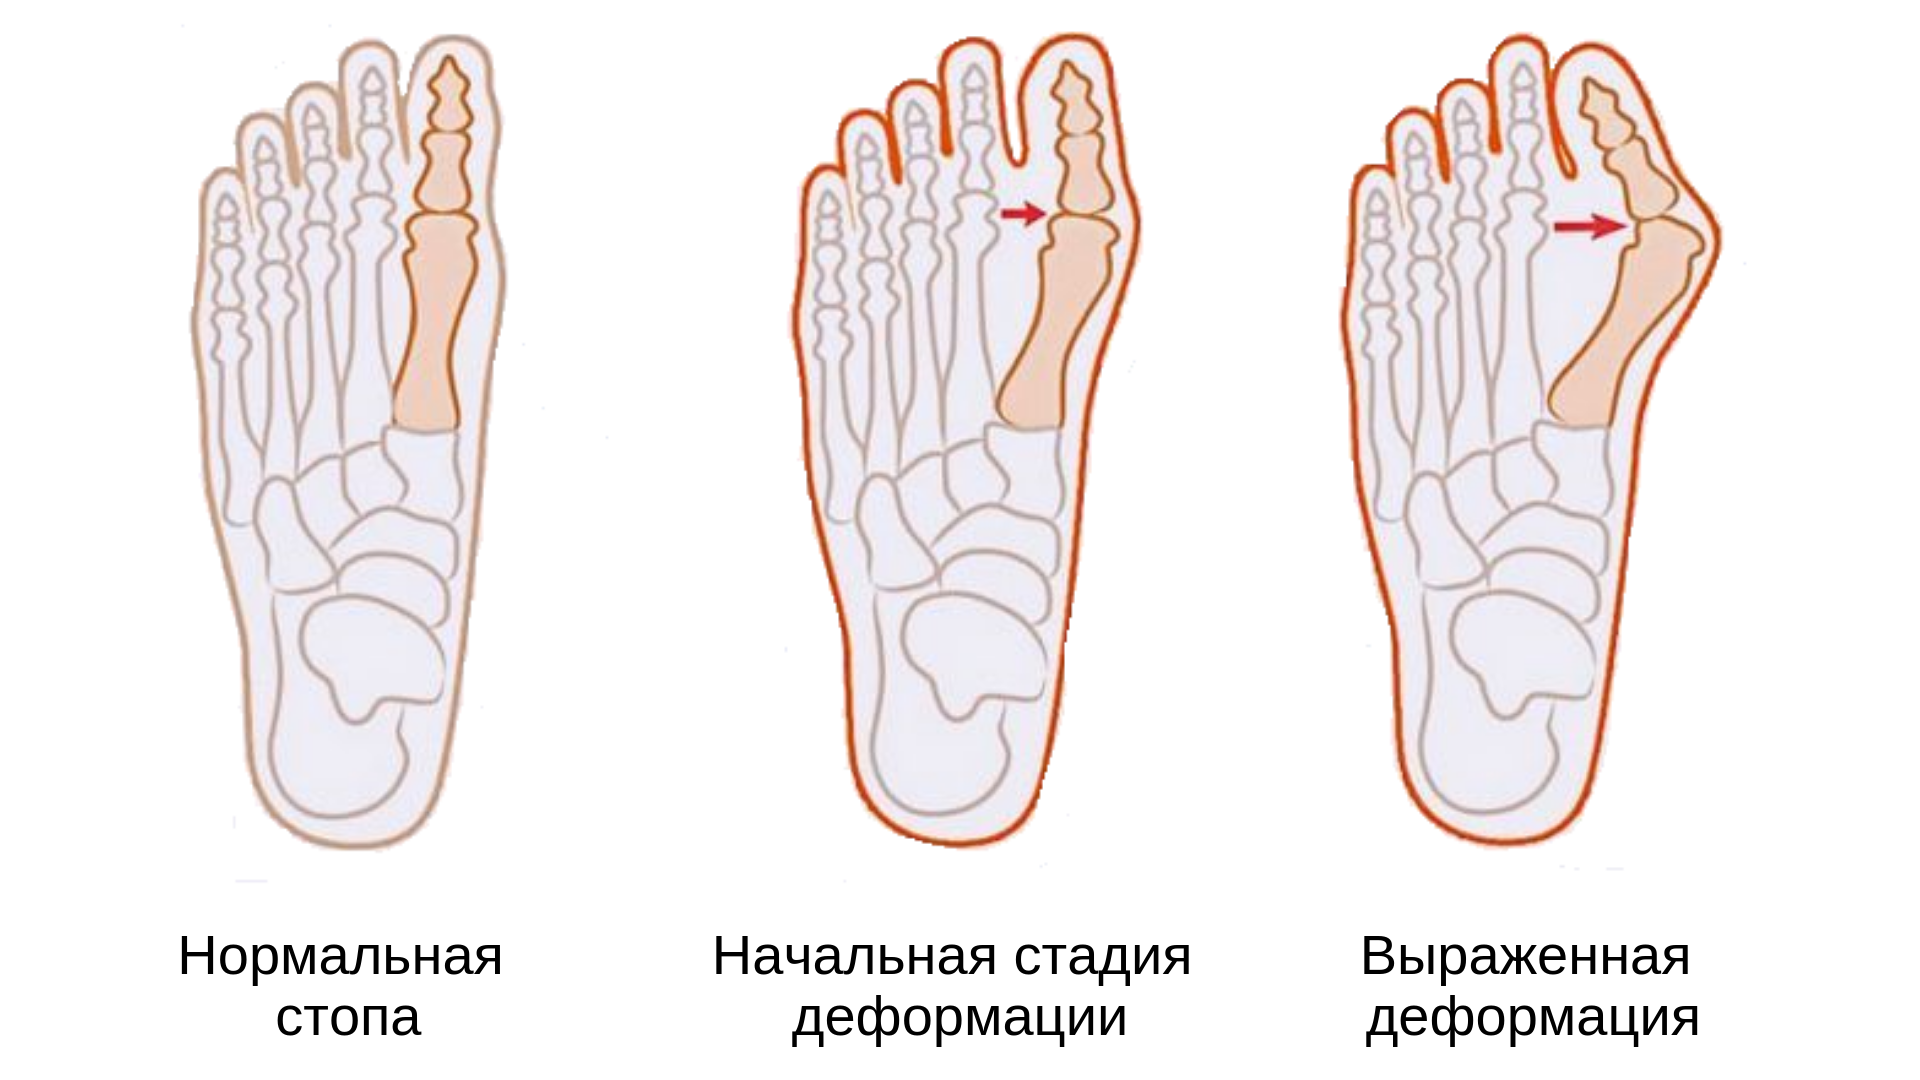 Корригирующие изделия для стопы и пальцев ног